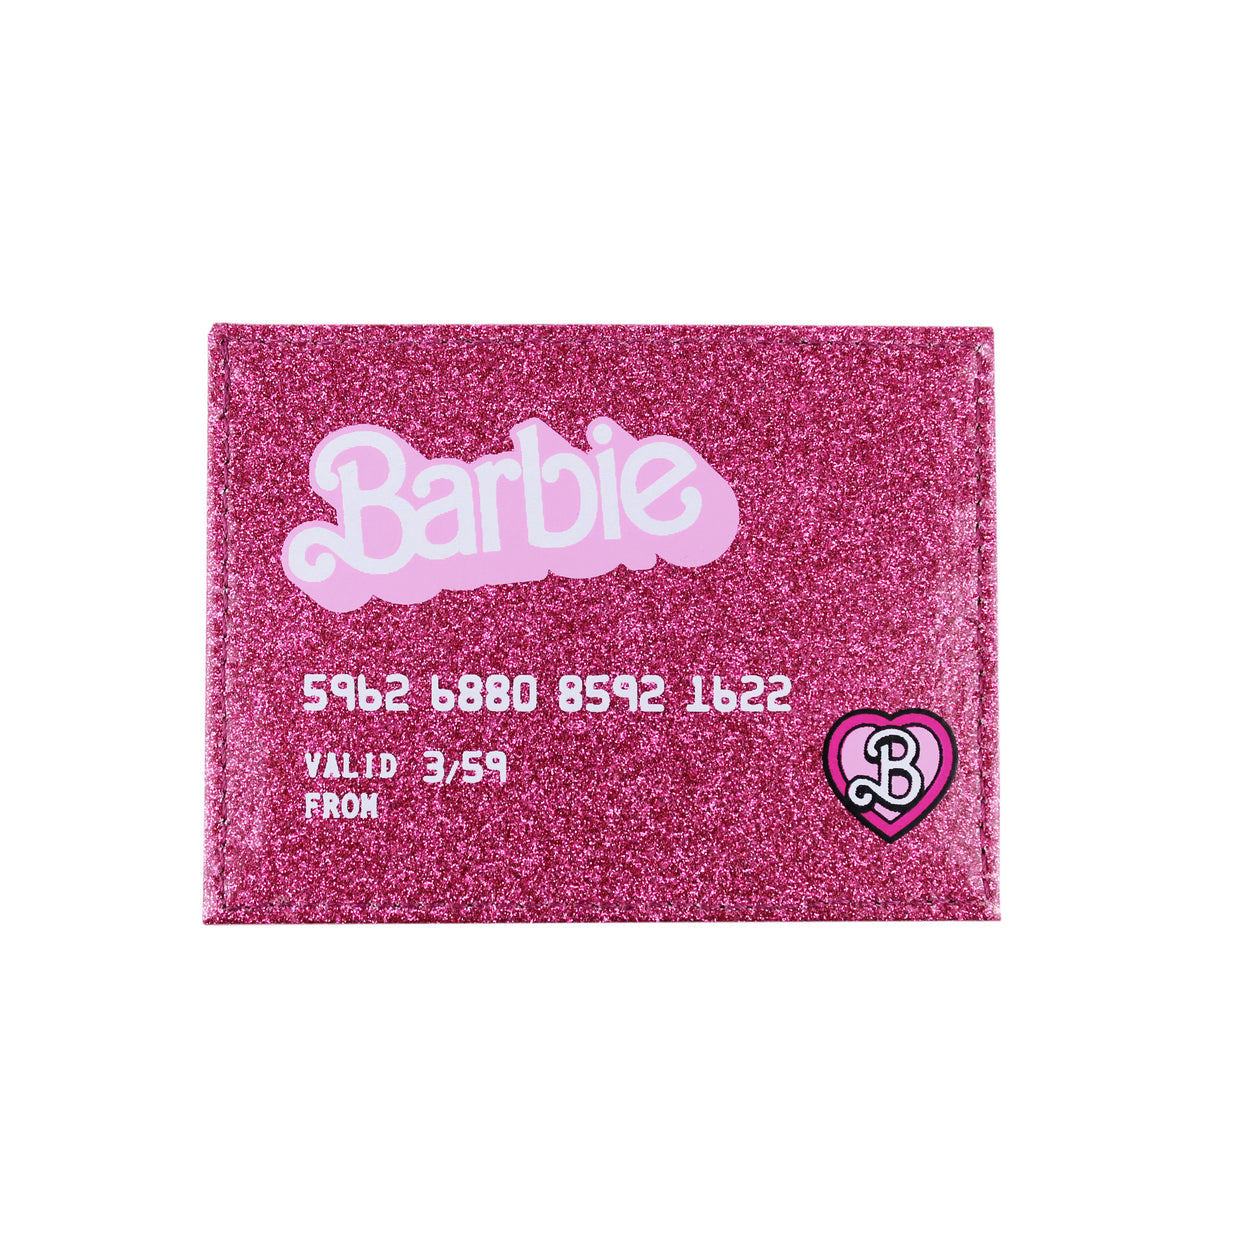 Barbie Credit Card Holder